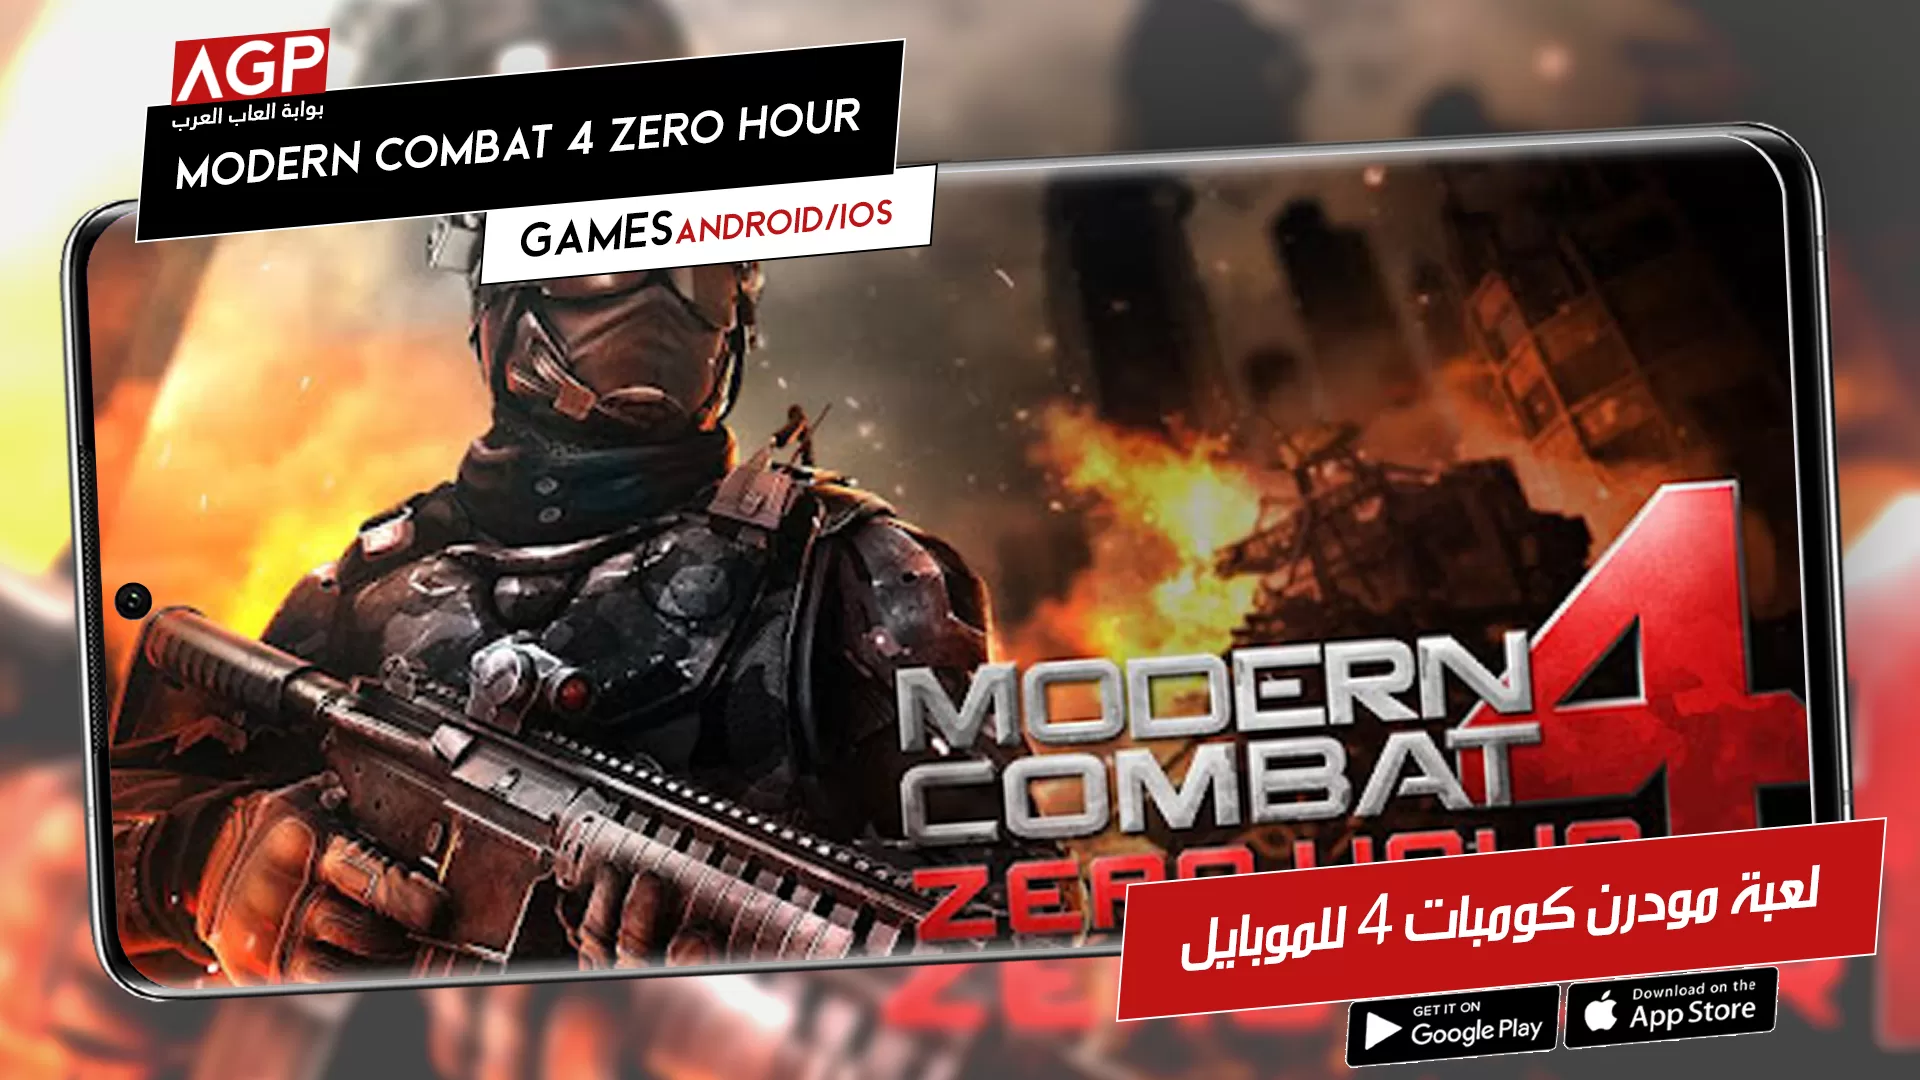 لعبة موبايل:استمتع في حرب Modern Combat 4 Zero Hour مع أصدقائك